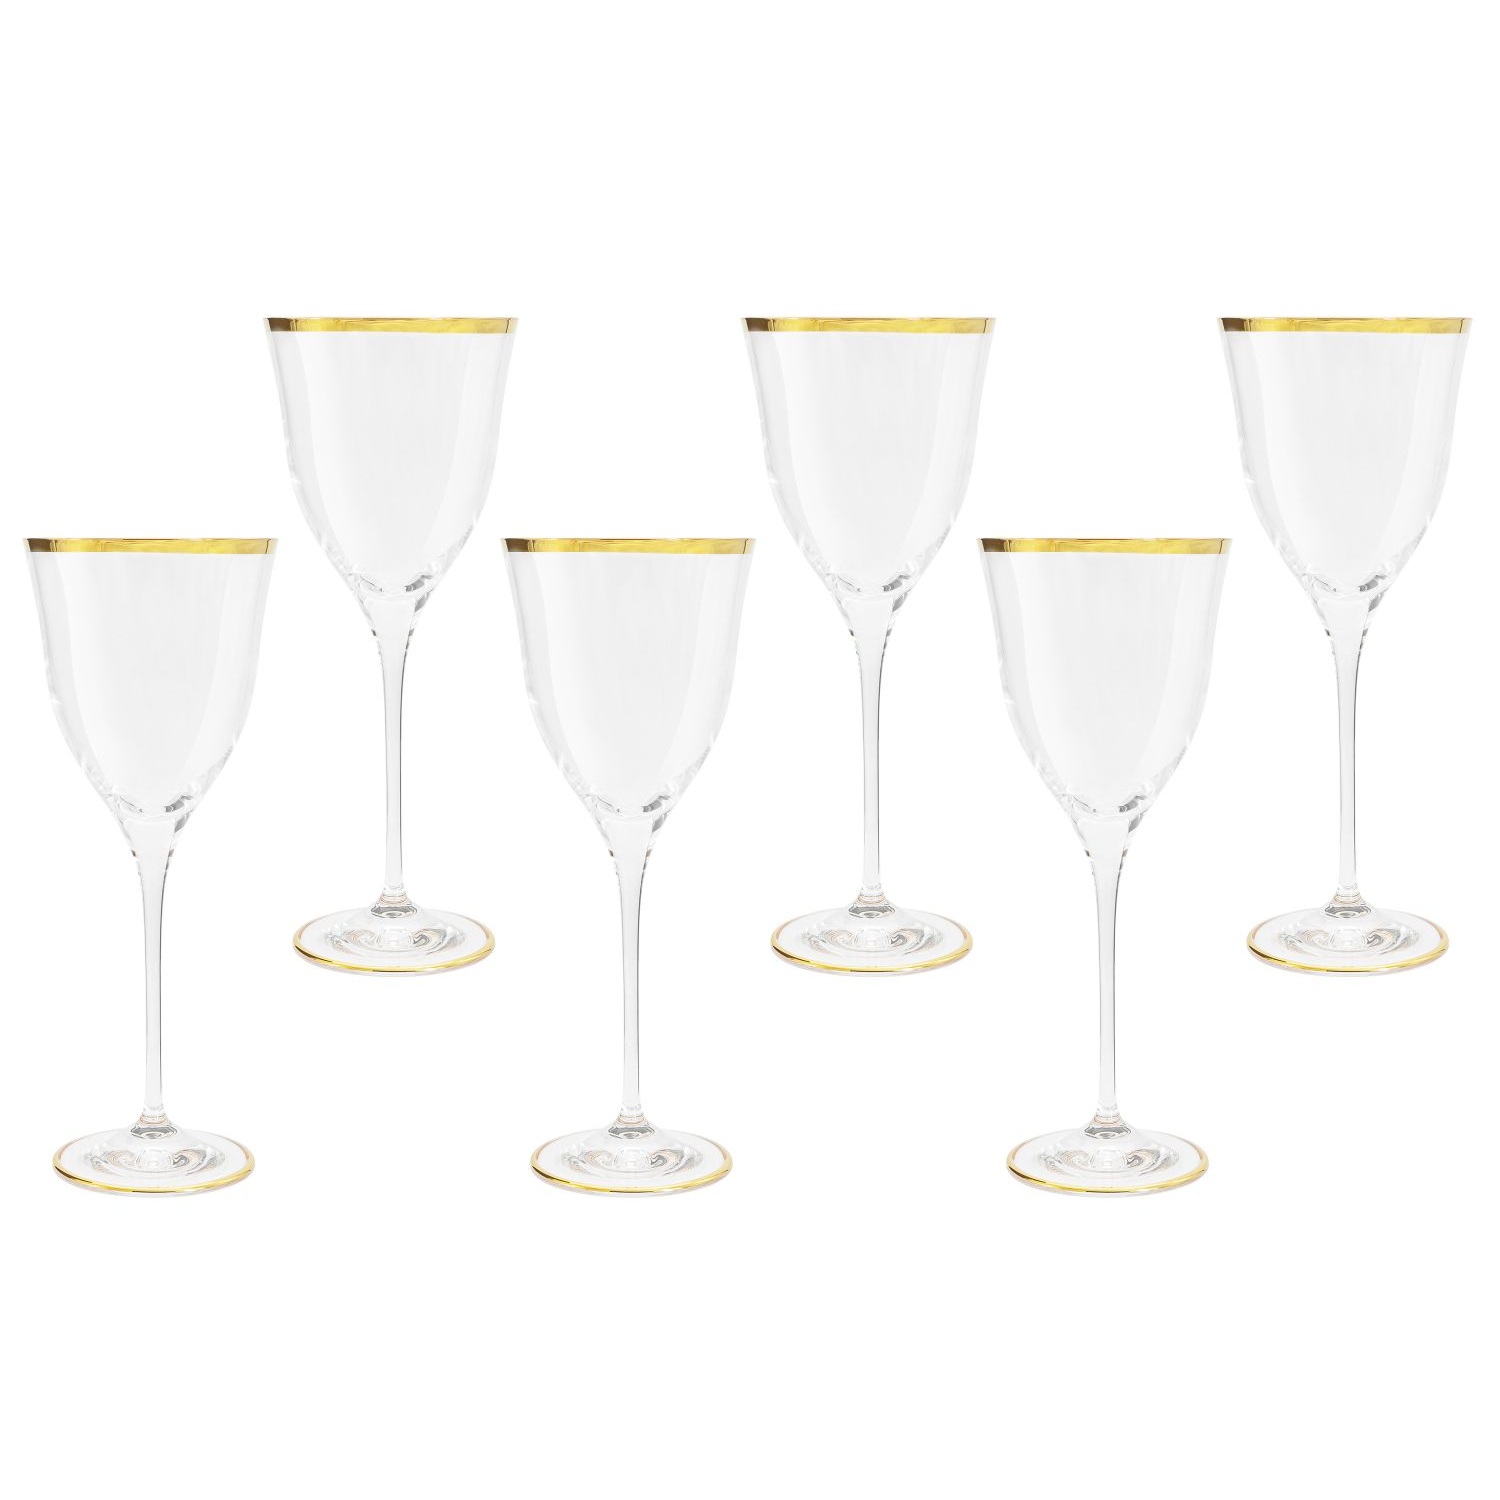 набор бокалов для шампанского same сабина золото 6 шт Набор бокалов для вина Same Сабина золото 6 шт